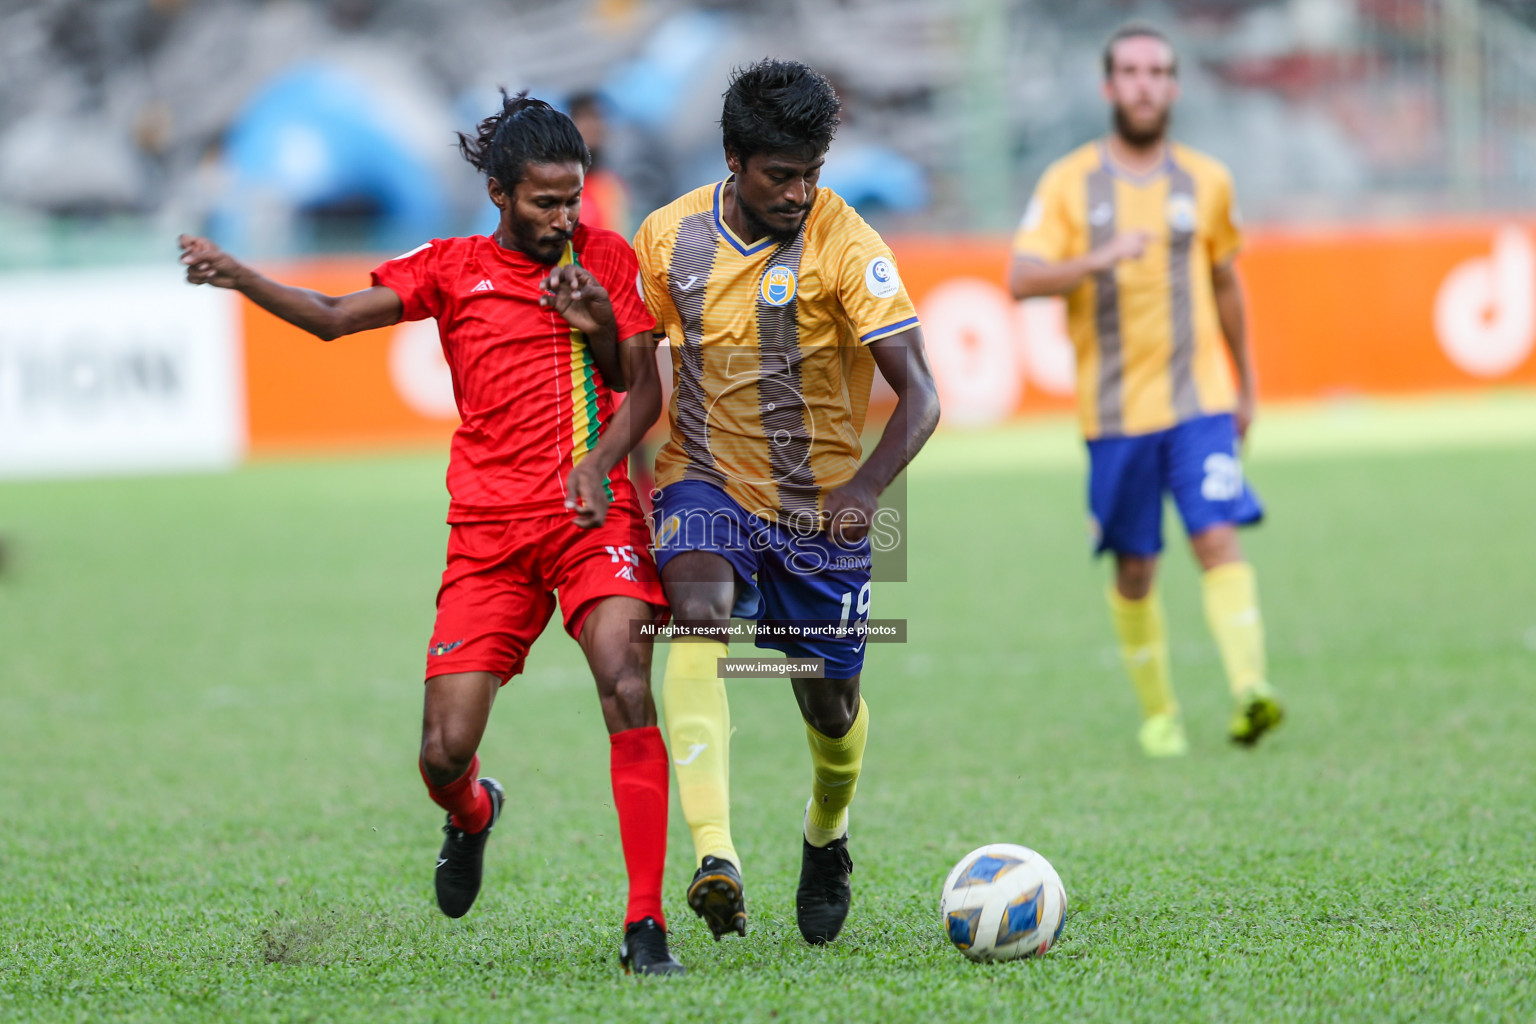 Club Valencia vs Da Grande SC in Dhiraagu Dhivehi Premier League 2020-21 on 16January 2021 held in Male', Maldives